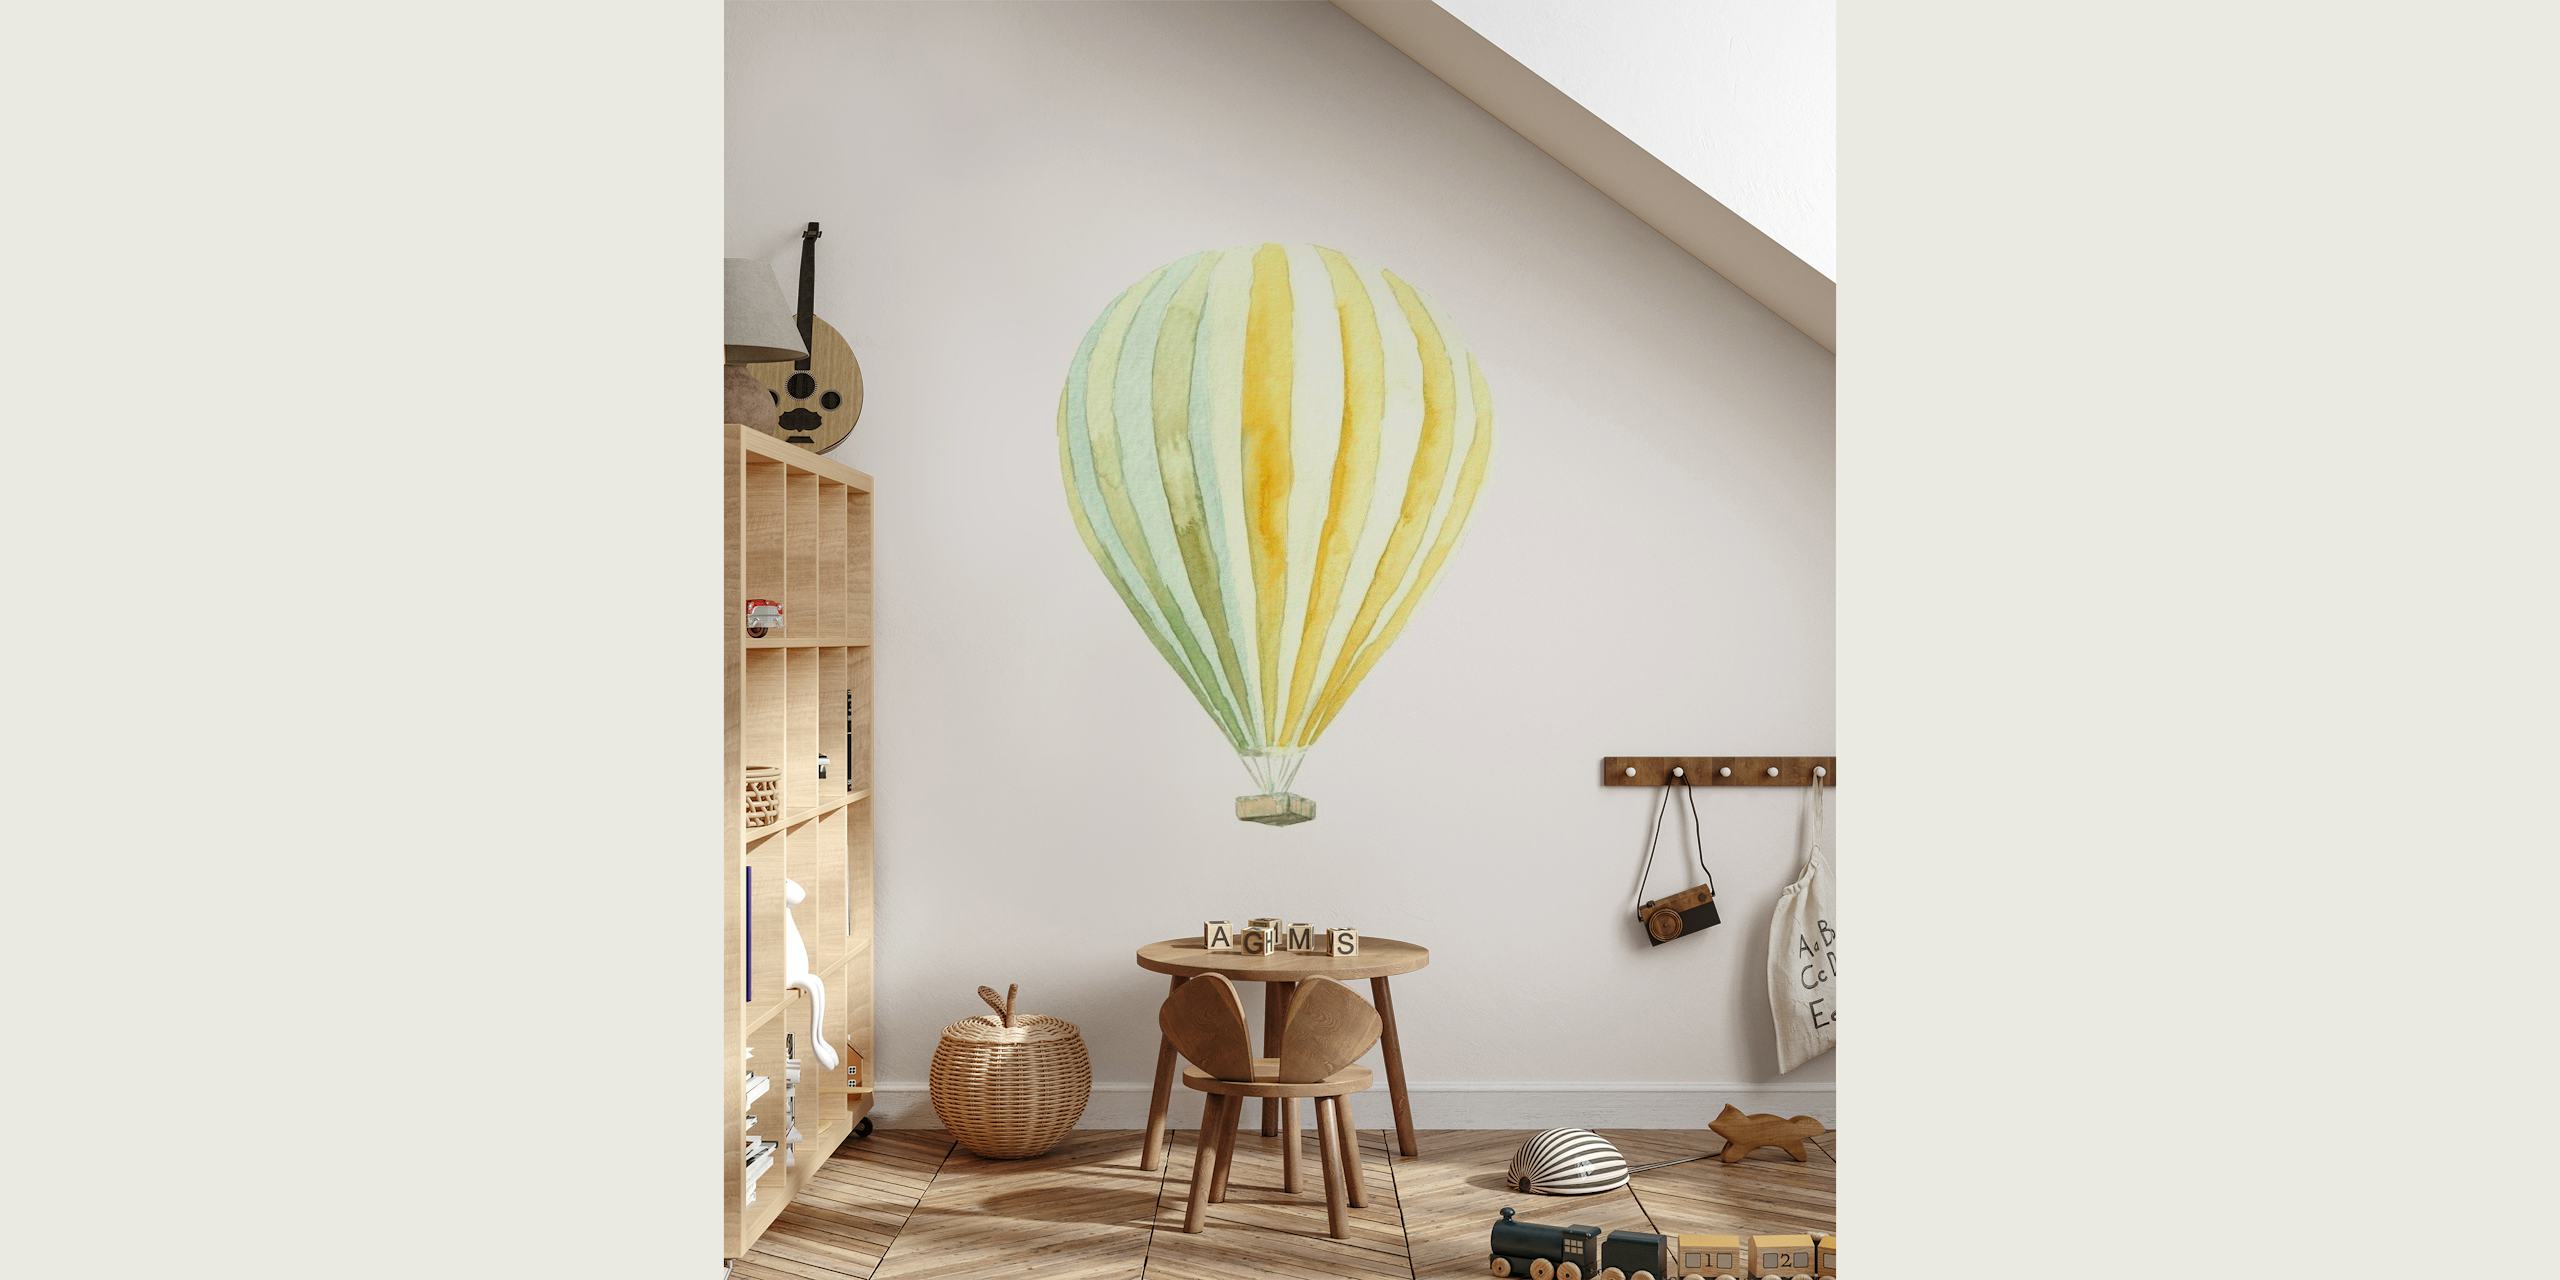 Nursery Room // Balloon tapetit